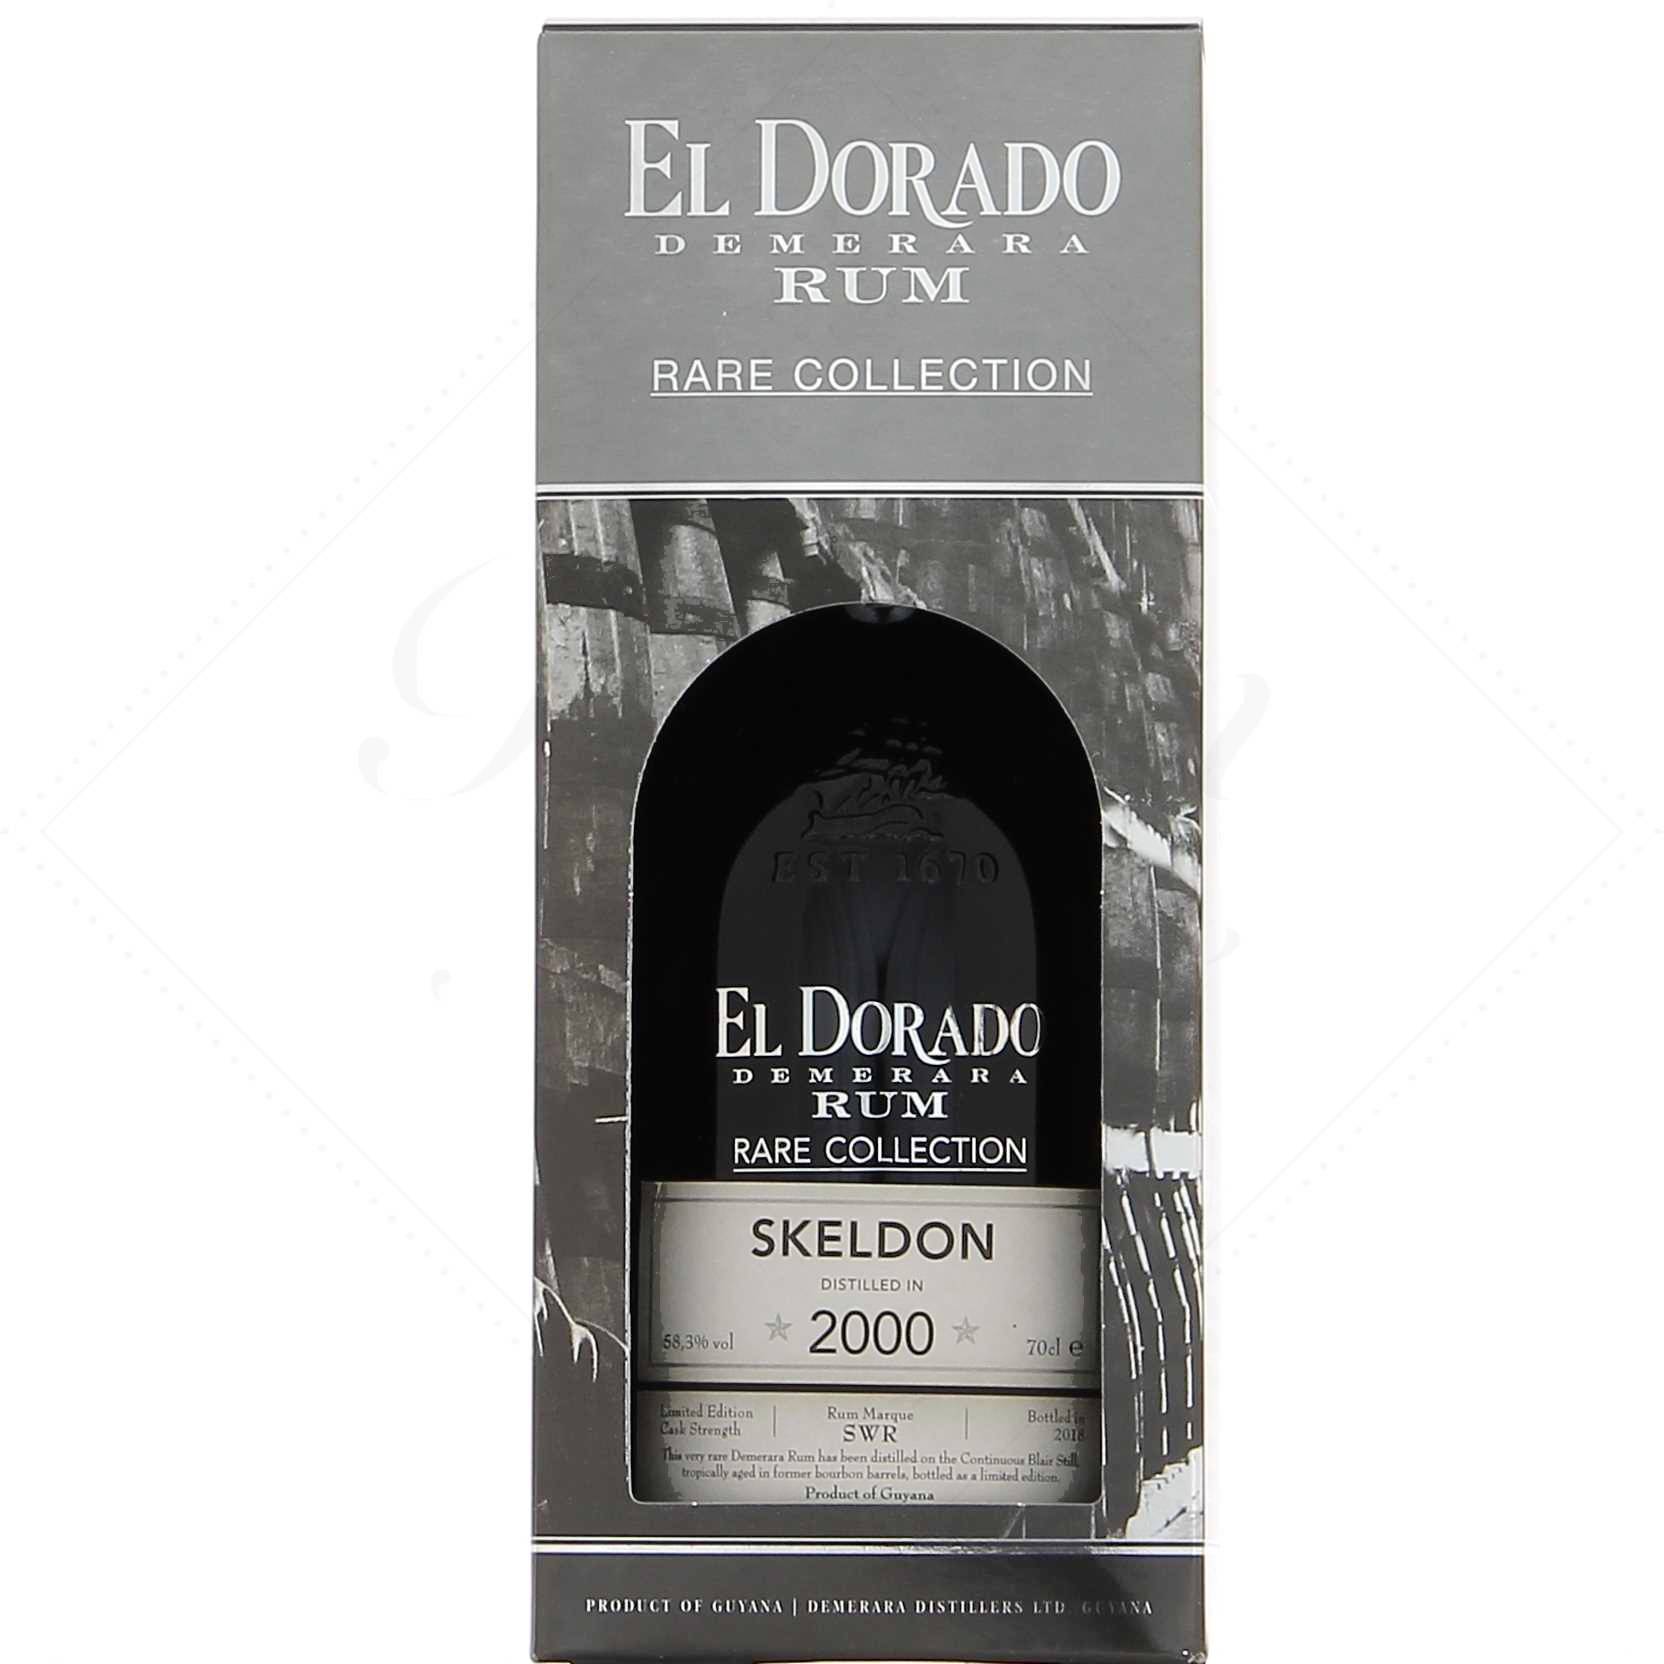 El Dorado Diffusion - 🌟NOUVEAU COFFRET À DÉCOUVRIR🌟 Dès l'été